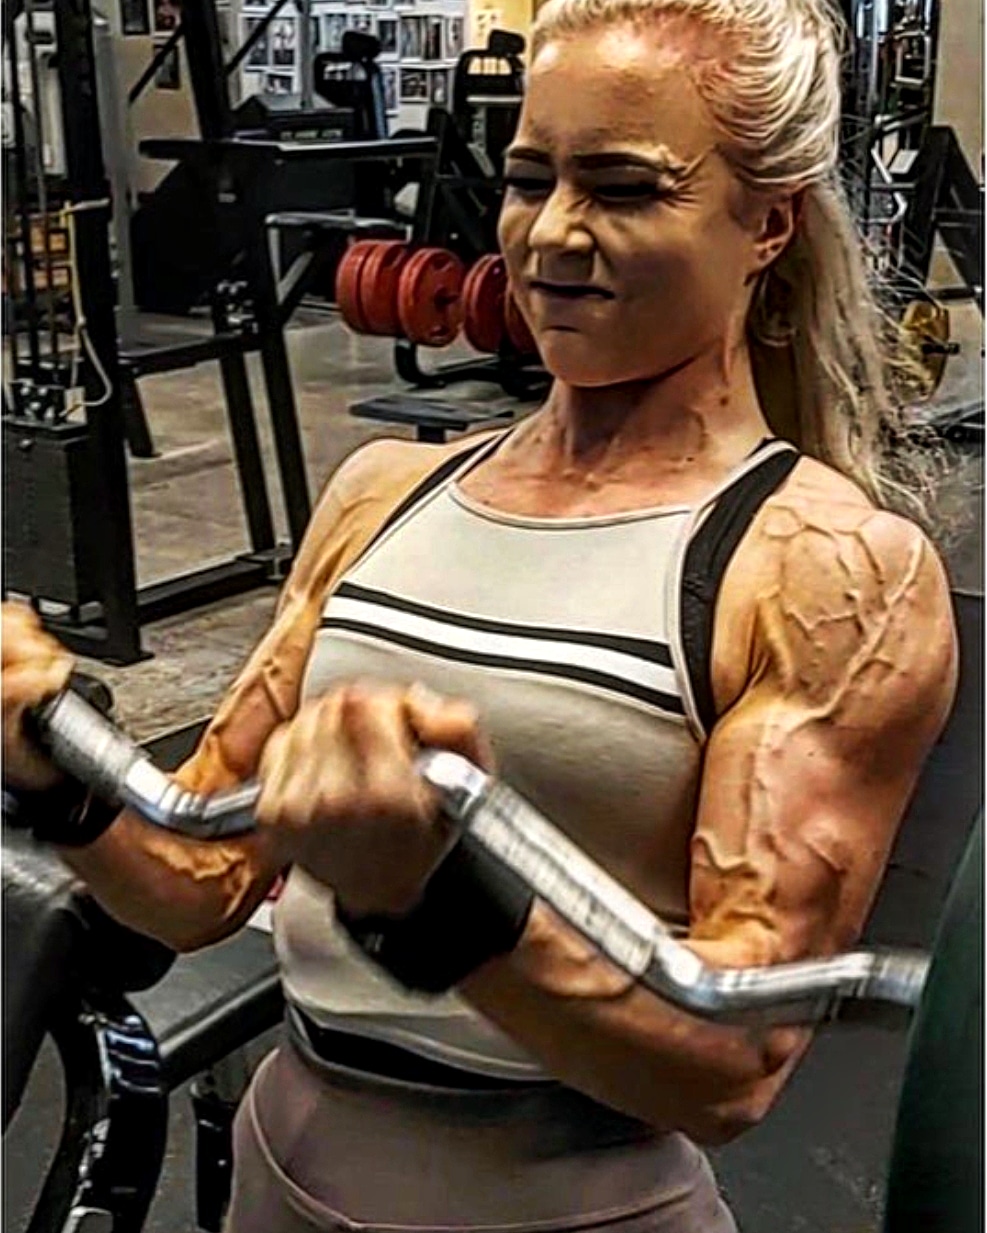 veiny female bodybuilder arms  Fitness models female, Muscular